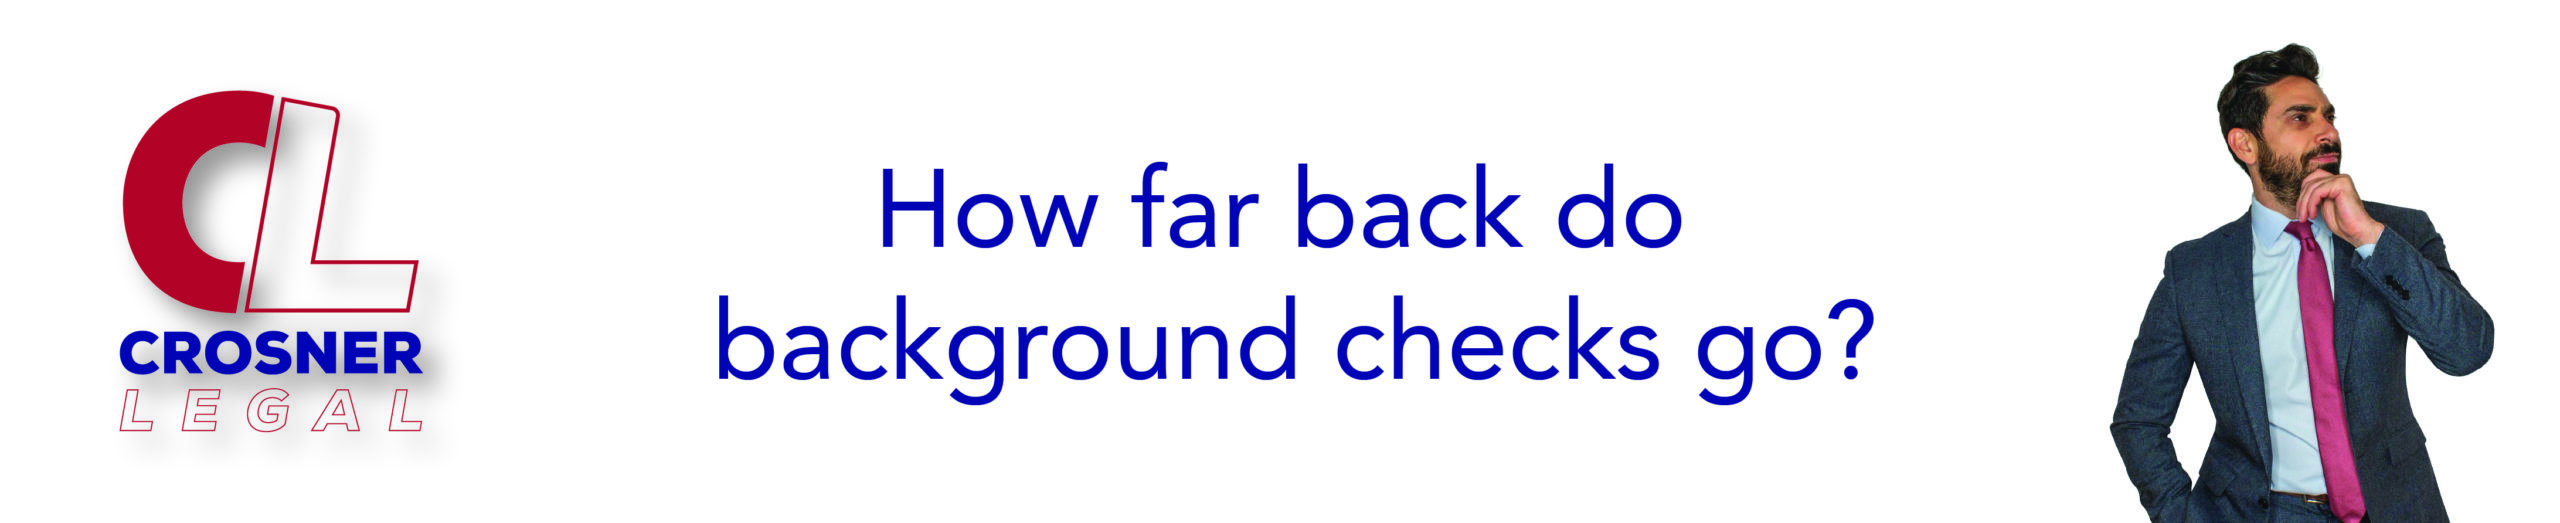 How far back do background checks go?